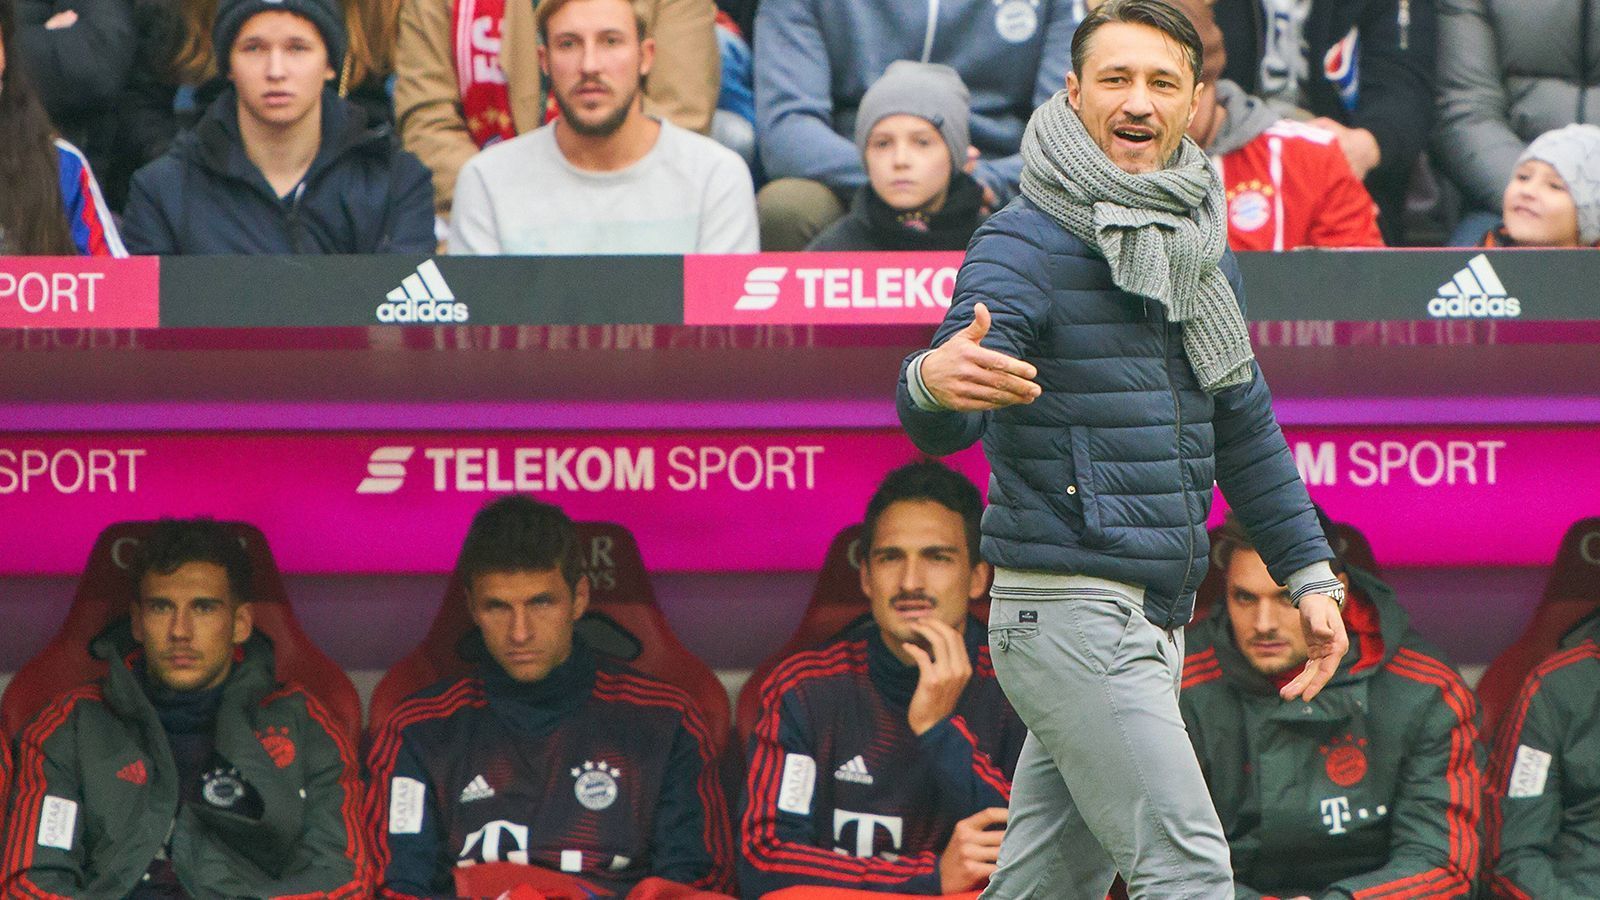 
                <strong>Gemischte Zeiten unter Kovac</strong><br>
                In den Monaten zuvor starteten die Bayern unter dem neuen Trainer Niko Kovac eigentlich gut in die Saison, doch es entwickeln sich mit der Zeit immer mehr Nebenschaukriegsplätze. Hauptbeteiligt ist auch Thomas Müller, dessen sportliches Standing unter Kovac leidet. Seine Frau kritisiert den Bayern-Trainer zwischenzeitlich, weil Müller nur eingewechselt wird. Und auch Hummels erlebte schon bessere Zeiten. Auf der Innenverteidiger-Position kann er sich nicht dauerhaft gegen Niklas Süle und Jerome Boateng durchsetzen. 
              